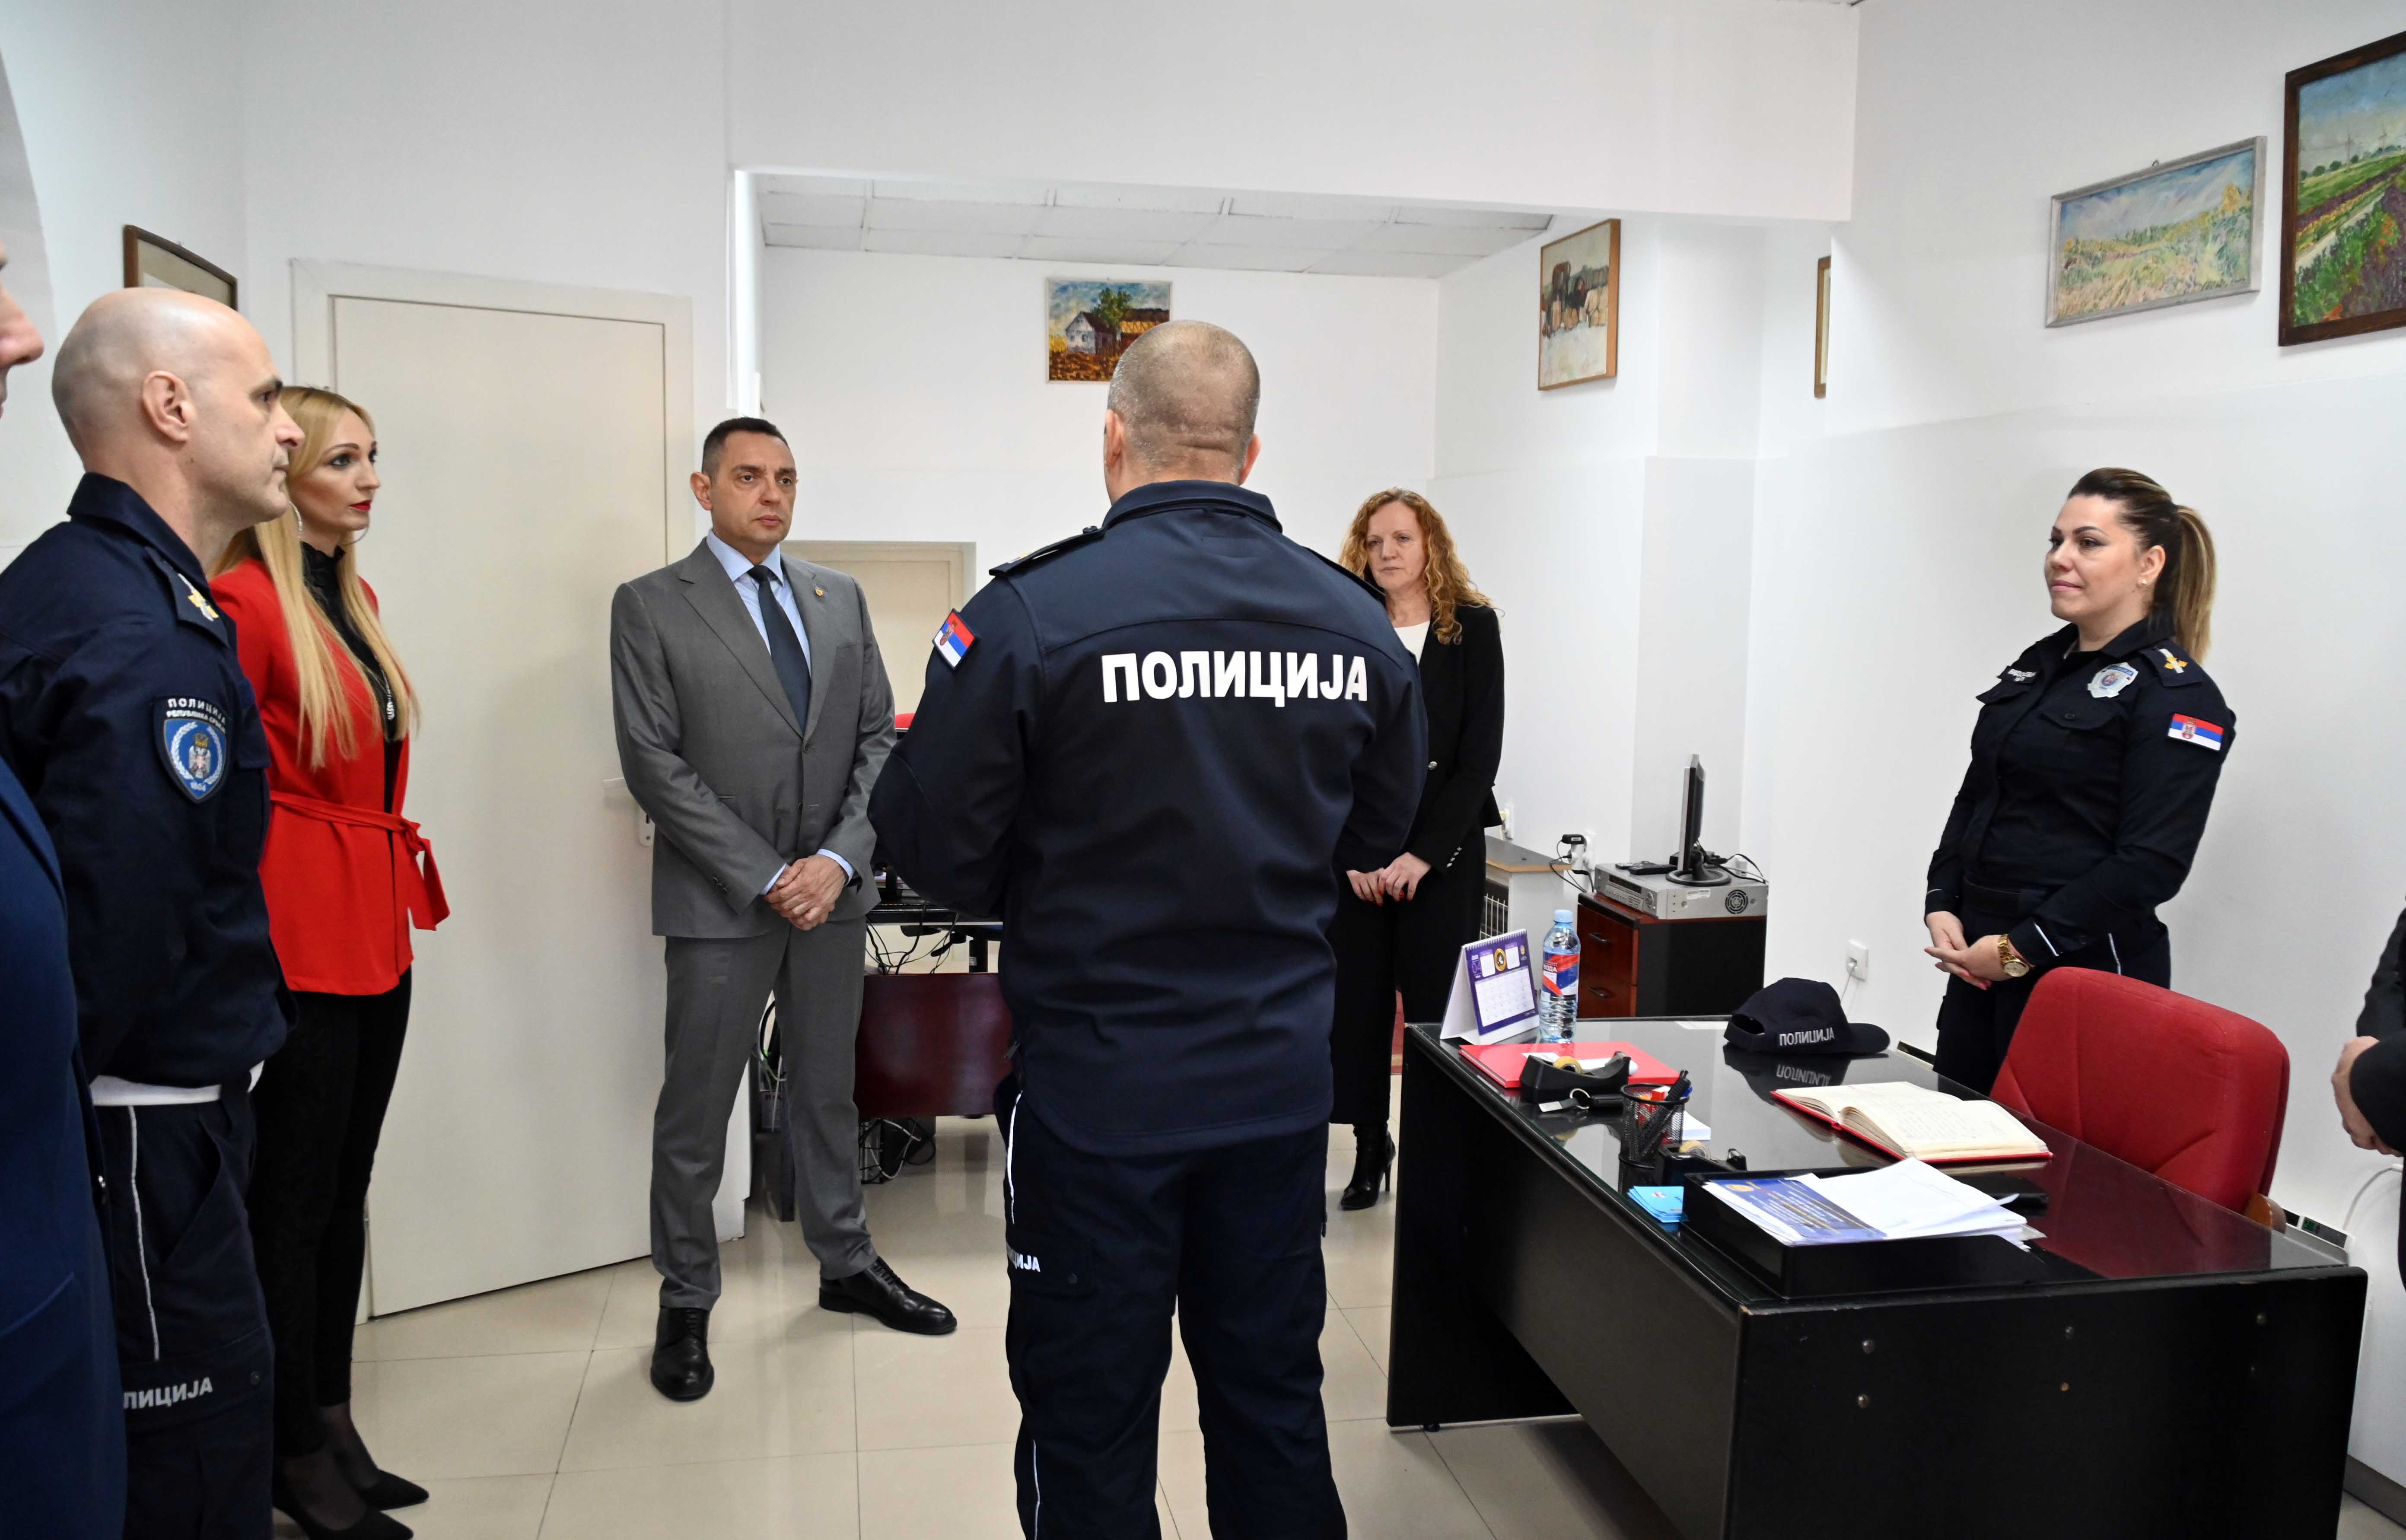 Ministar Aleksandar Vulin obišao Informativni centar Ministarstva unutrašnjih poslova u Pančevu i Mobilni informativni centar